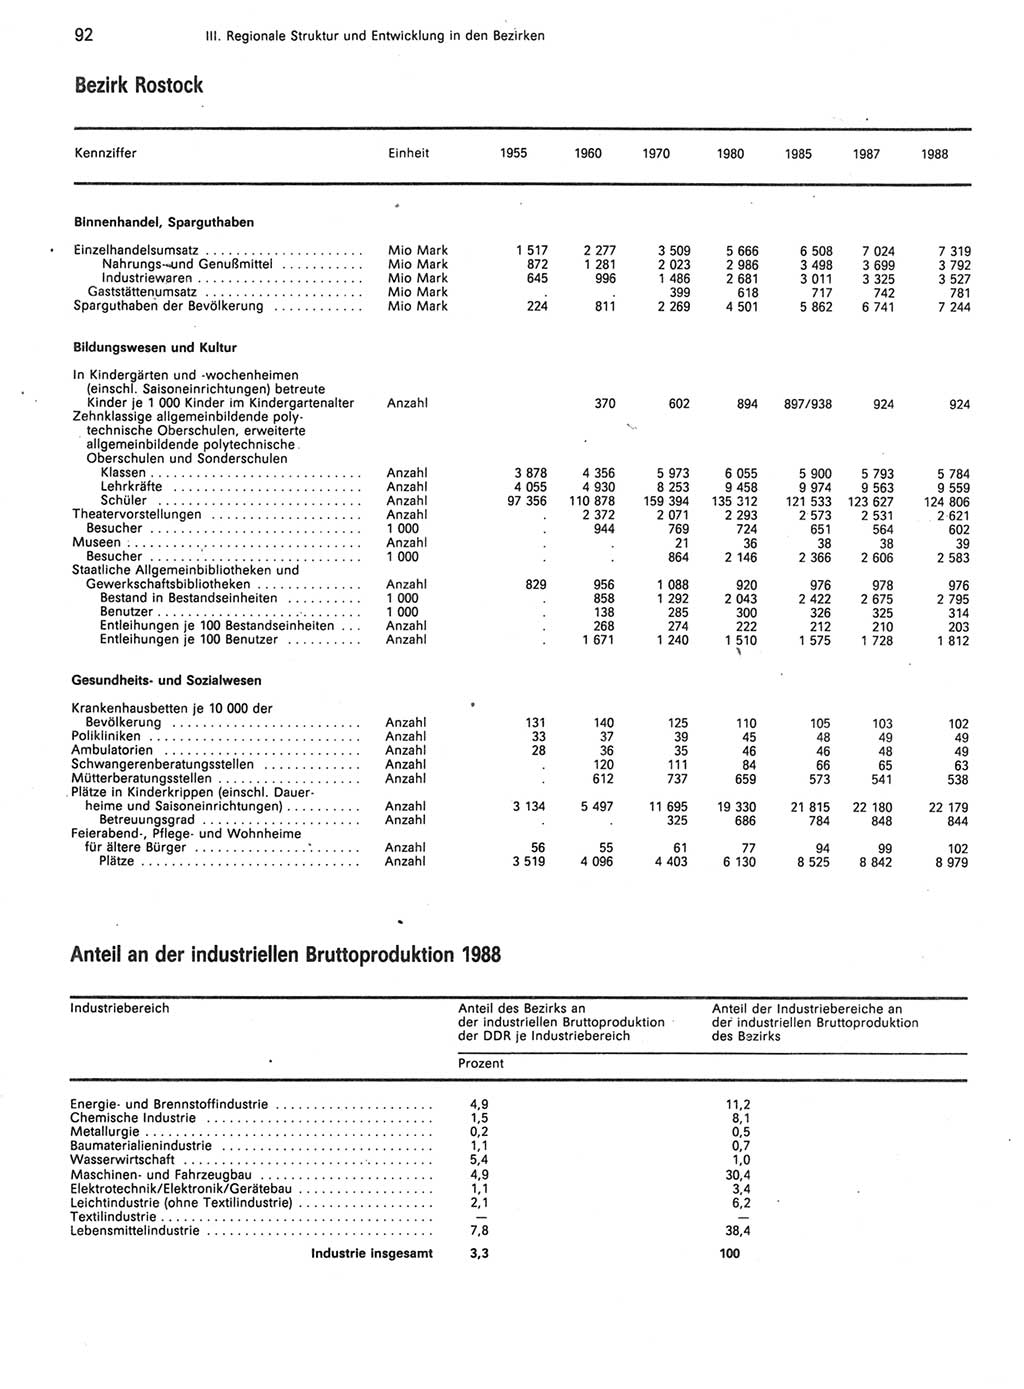 Statistisches Jahrbuch der Deutschen Demokratischen Republik (DDR) 1989, Seite 92 (Stat. Jb. DDR 1989, S. 92)